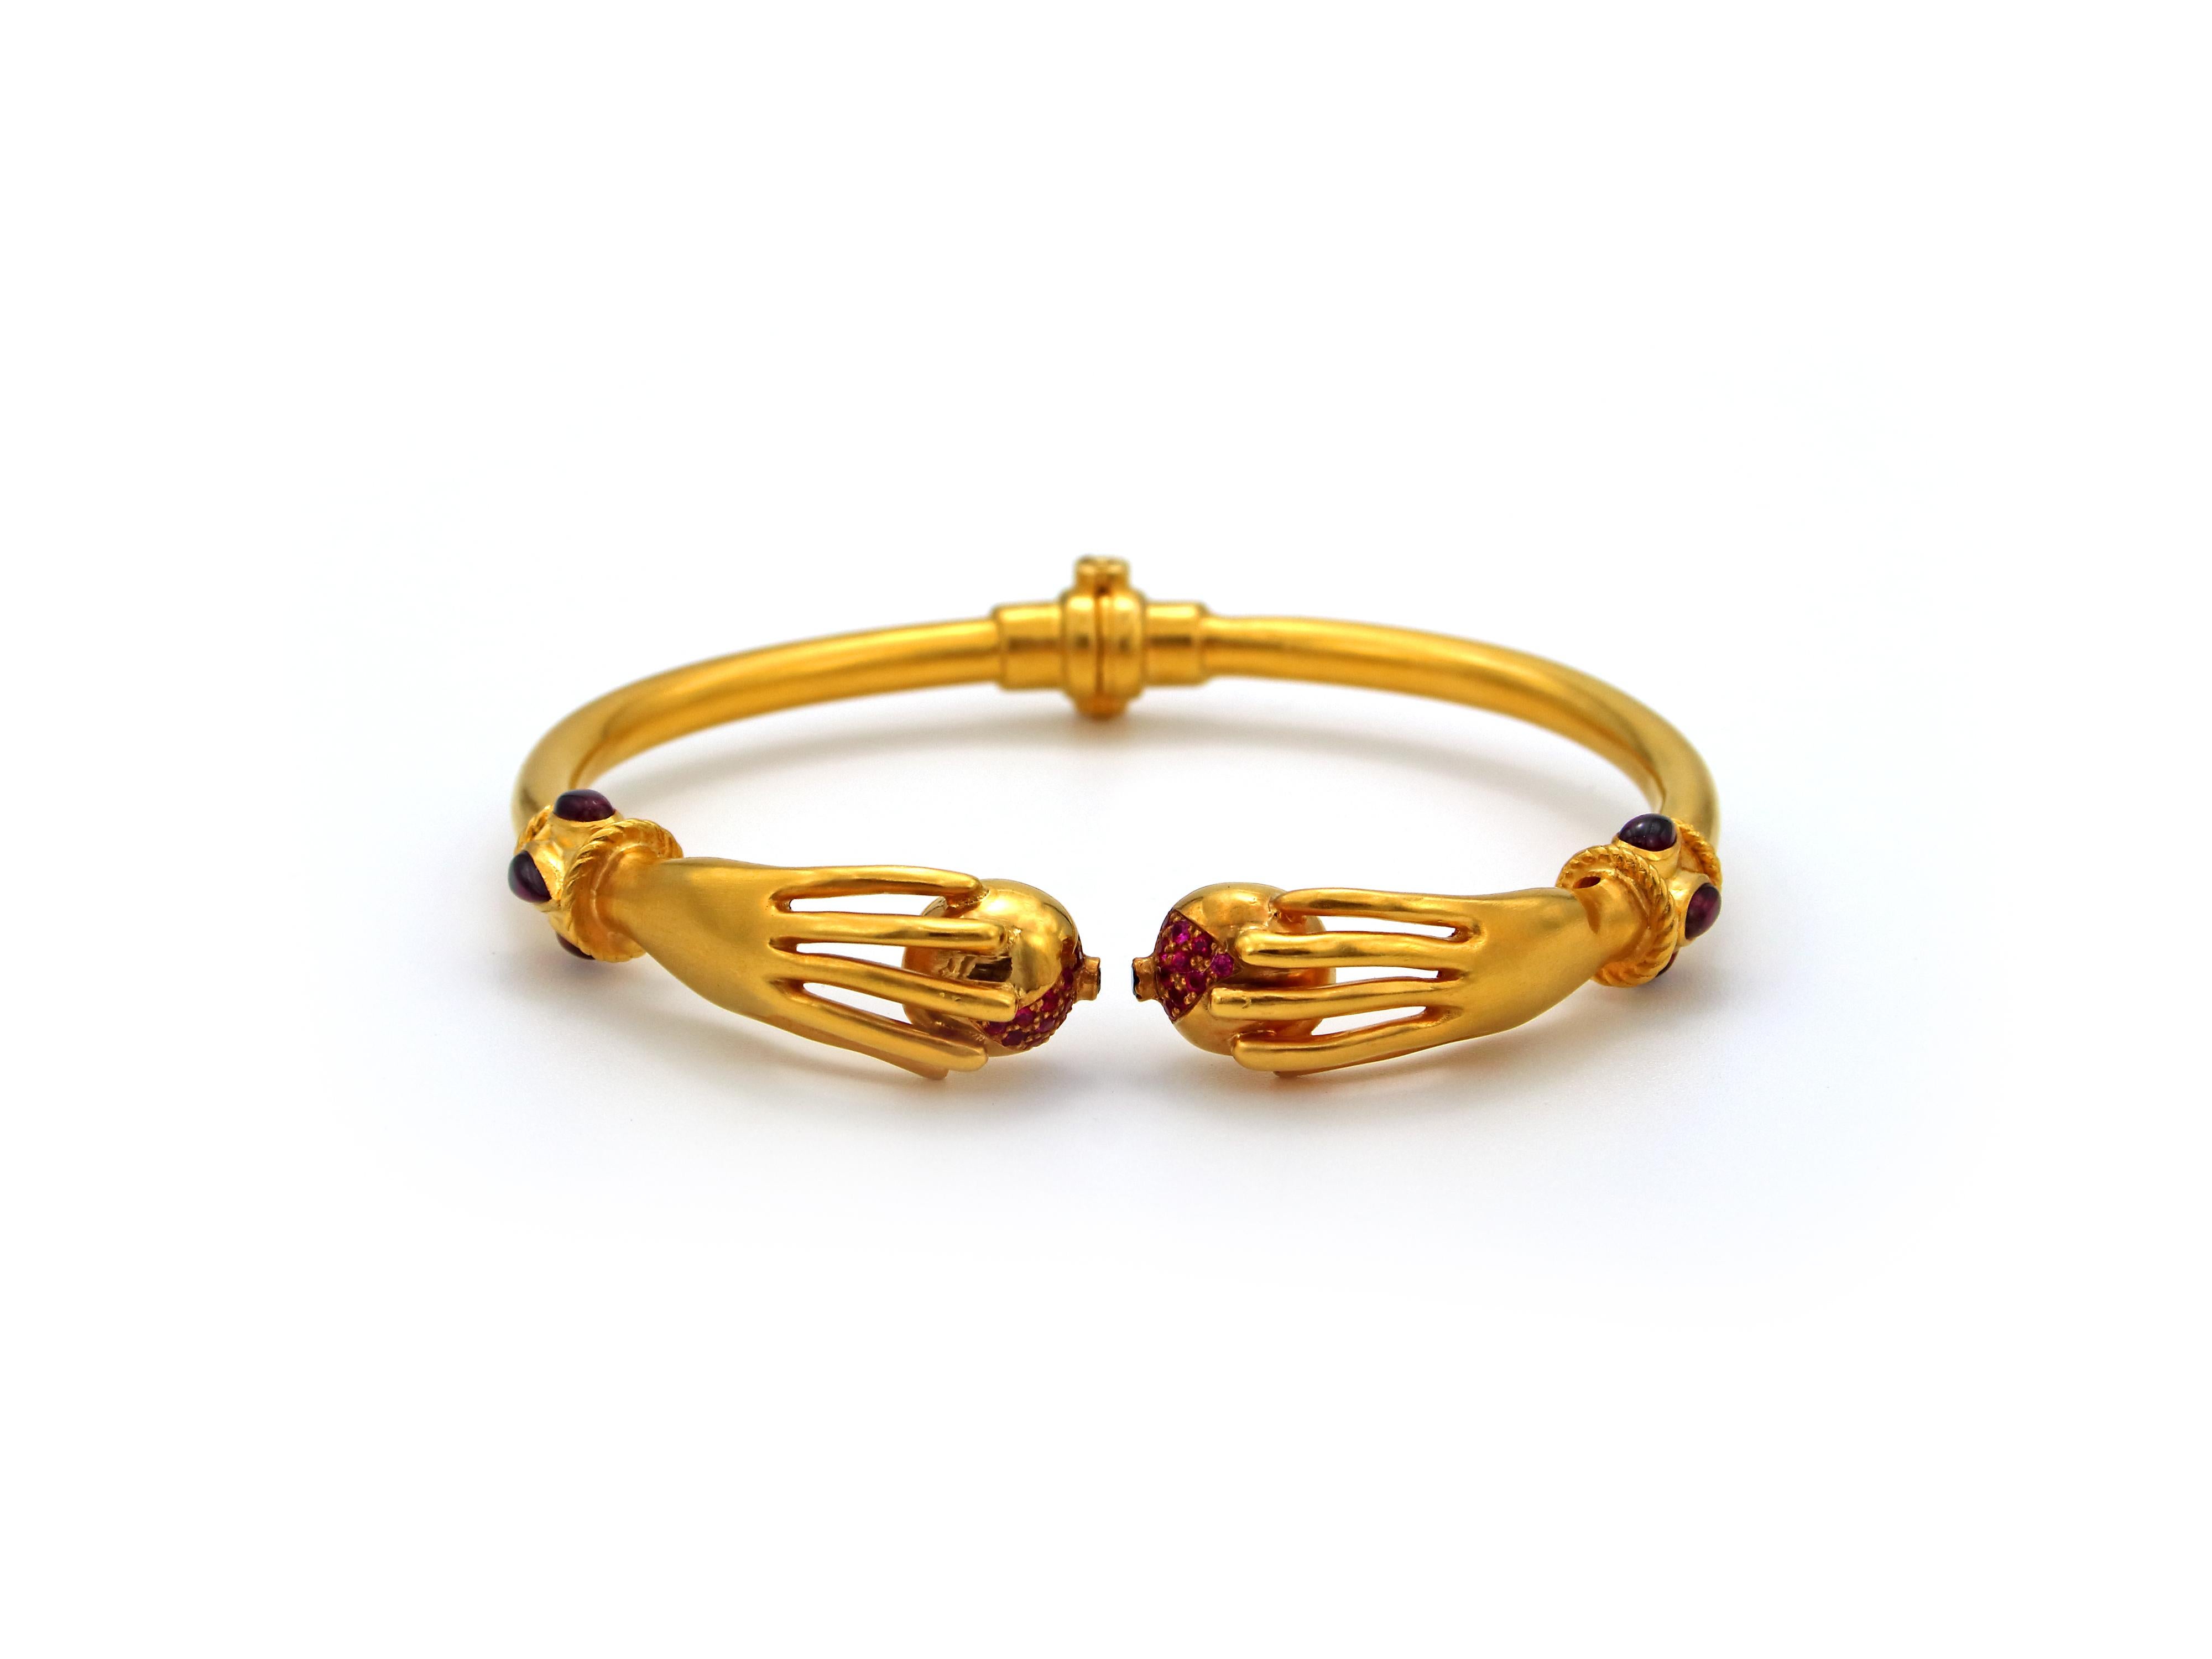 22k gold bangles designs with price in saudi arabia